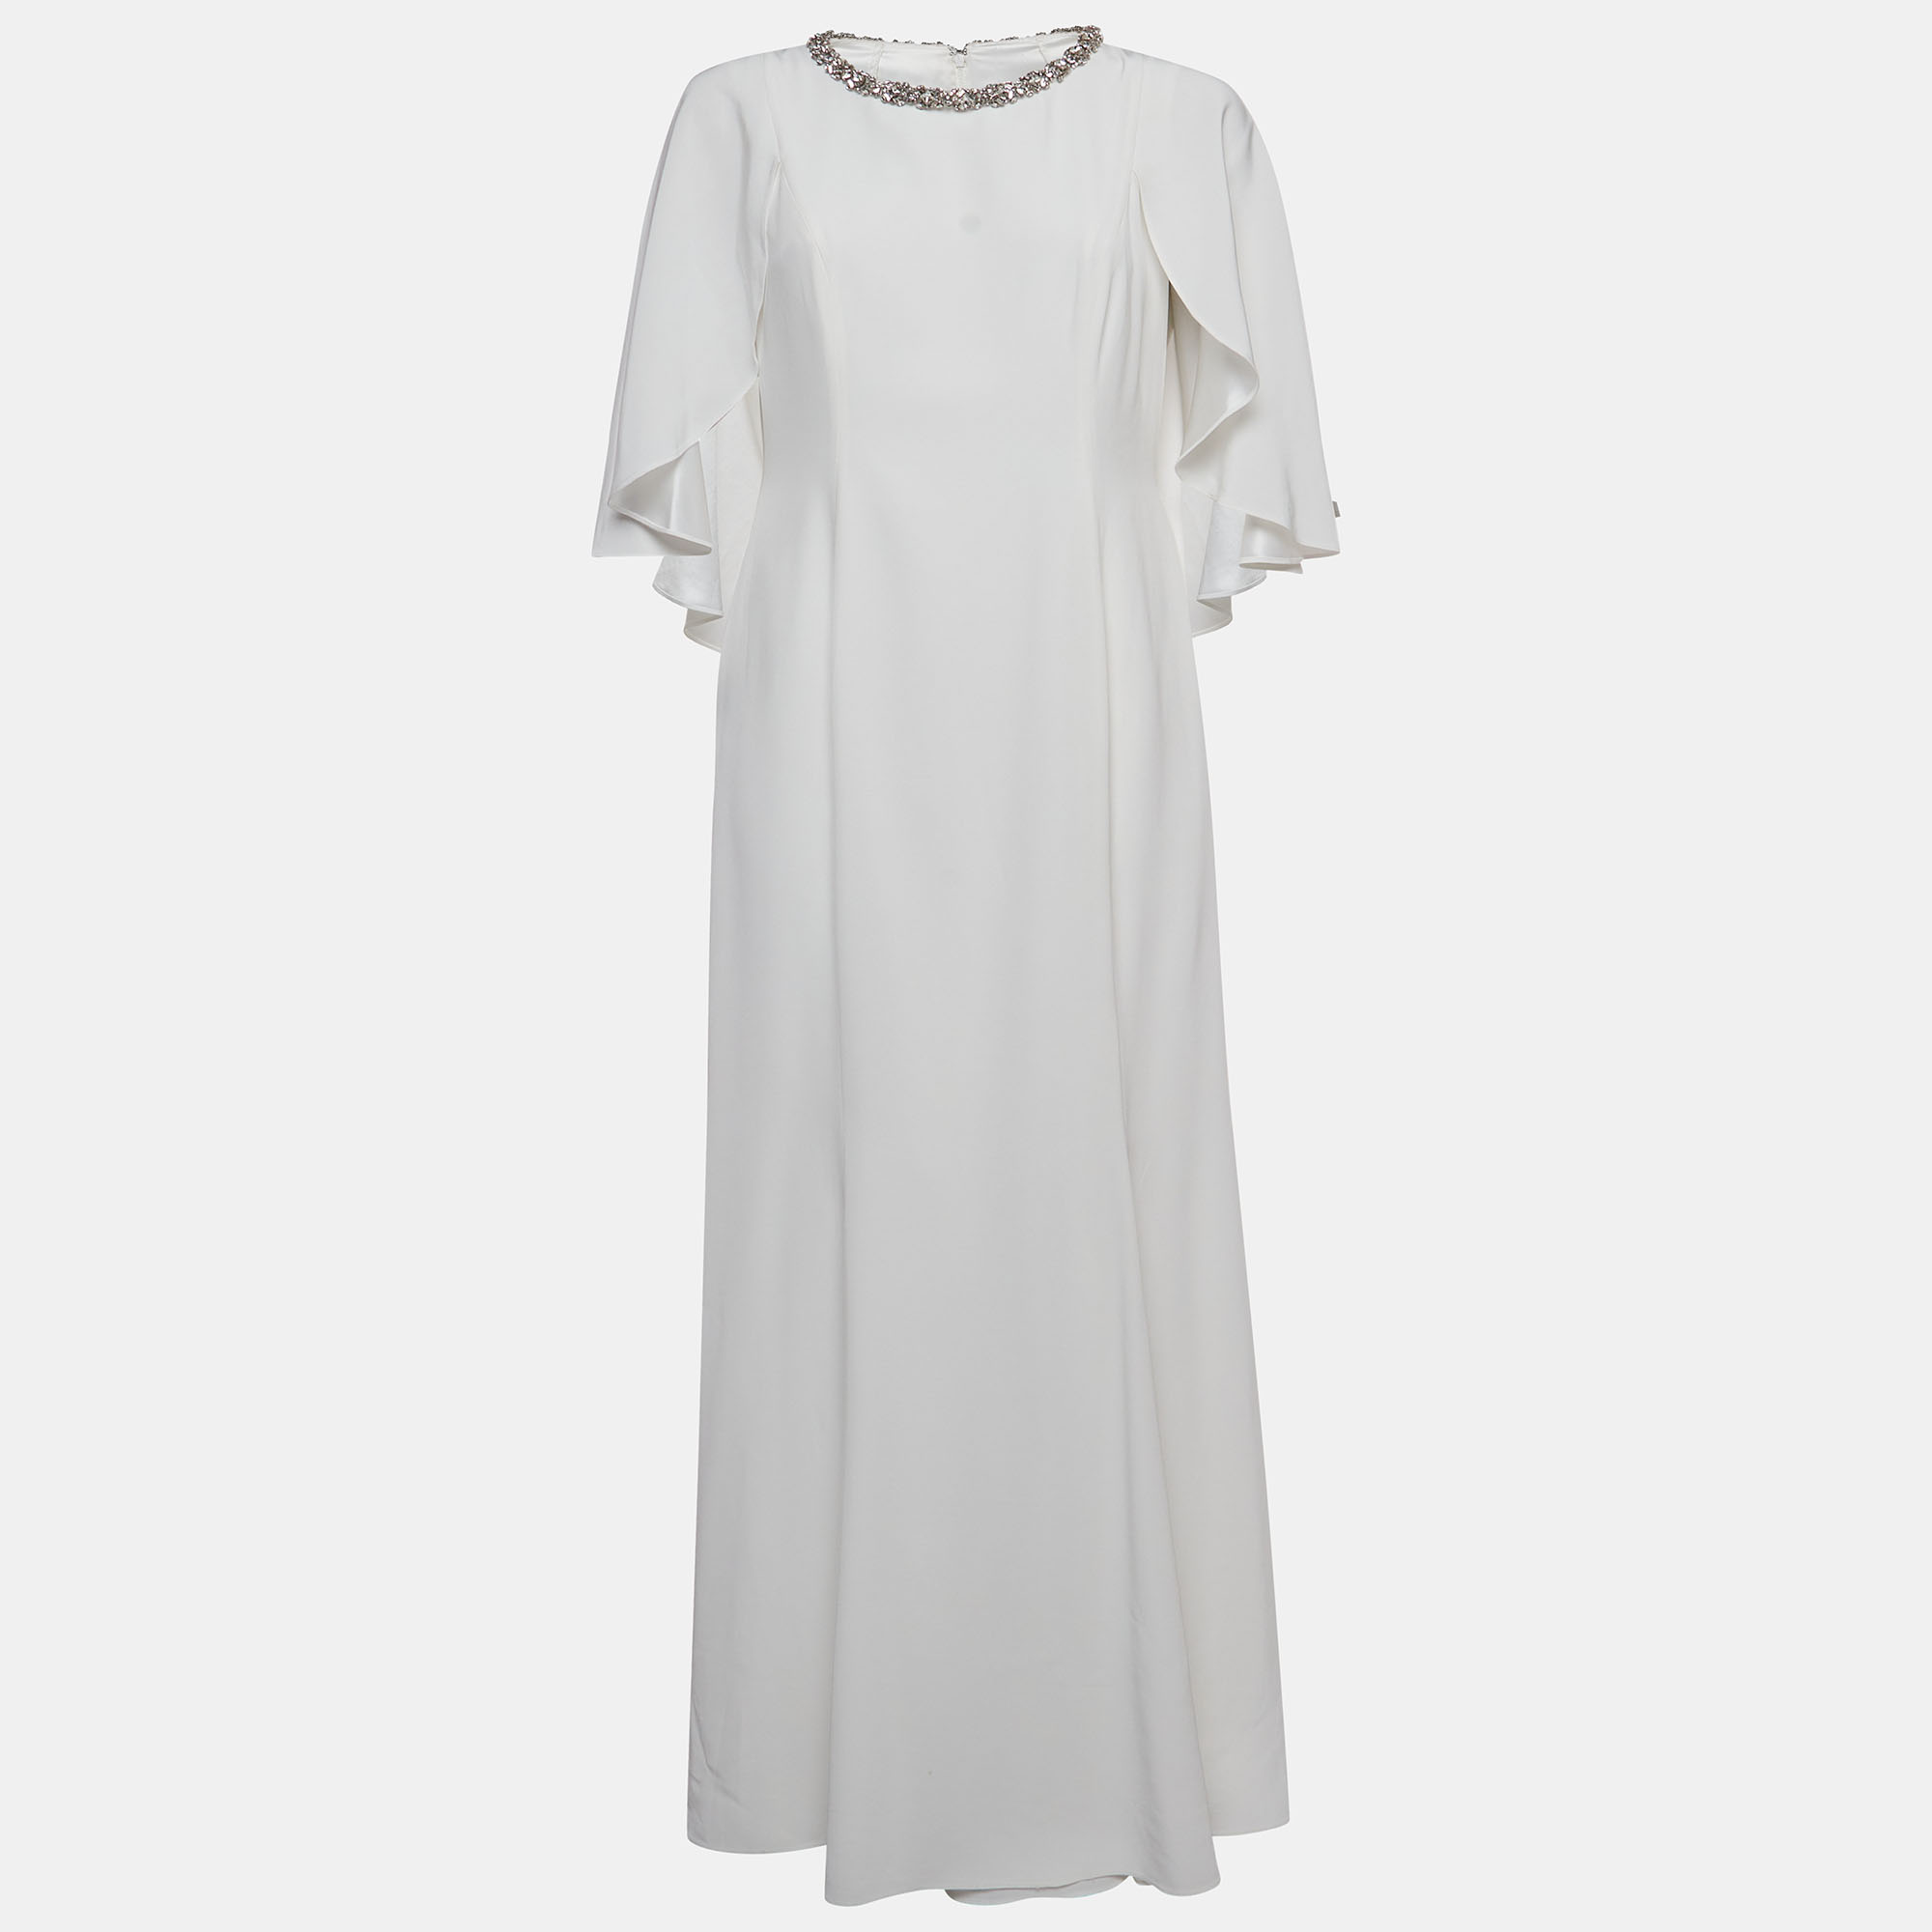 

Jenny Packham White Satin Crystal Embellished Neck Wedding Gown